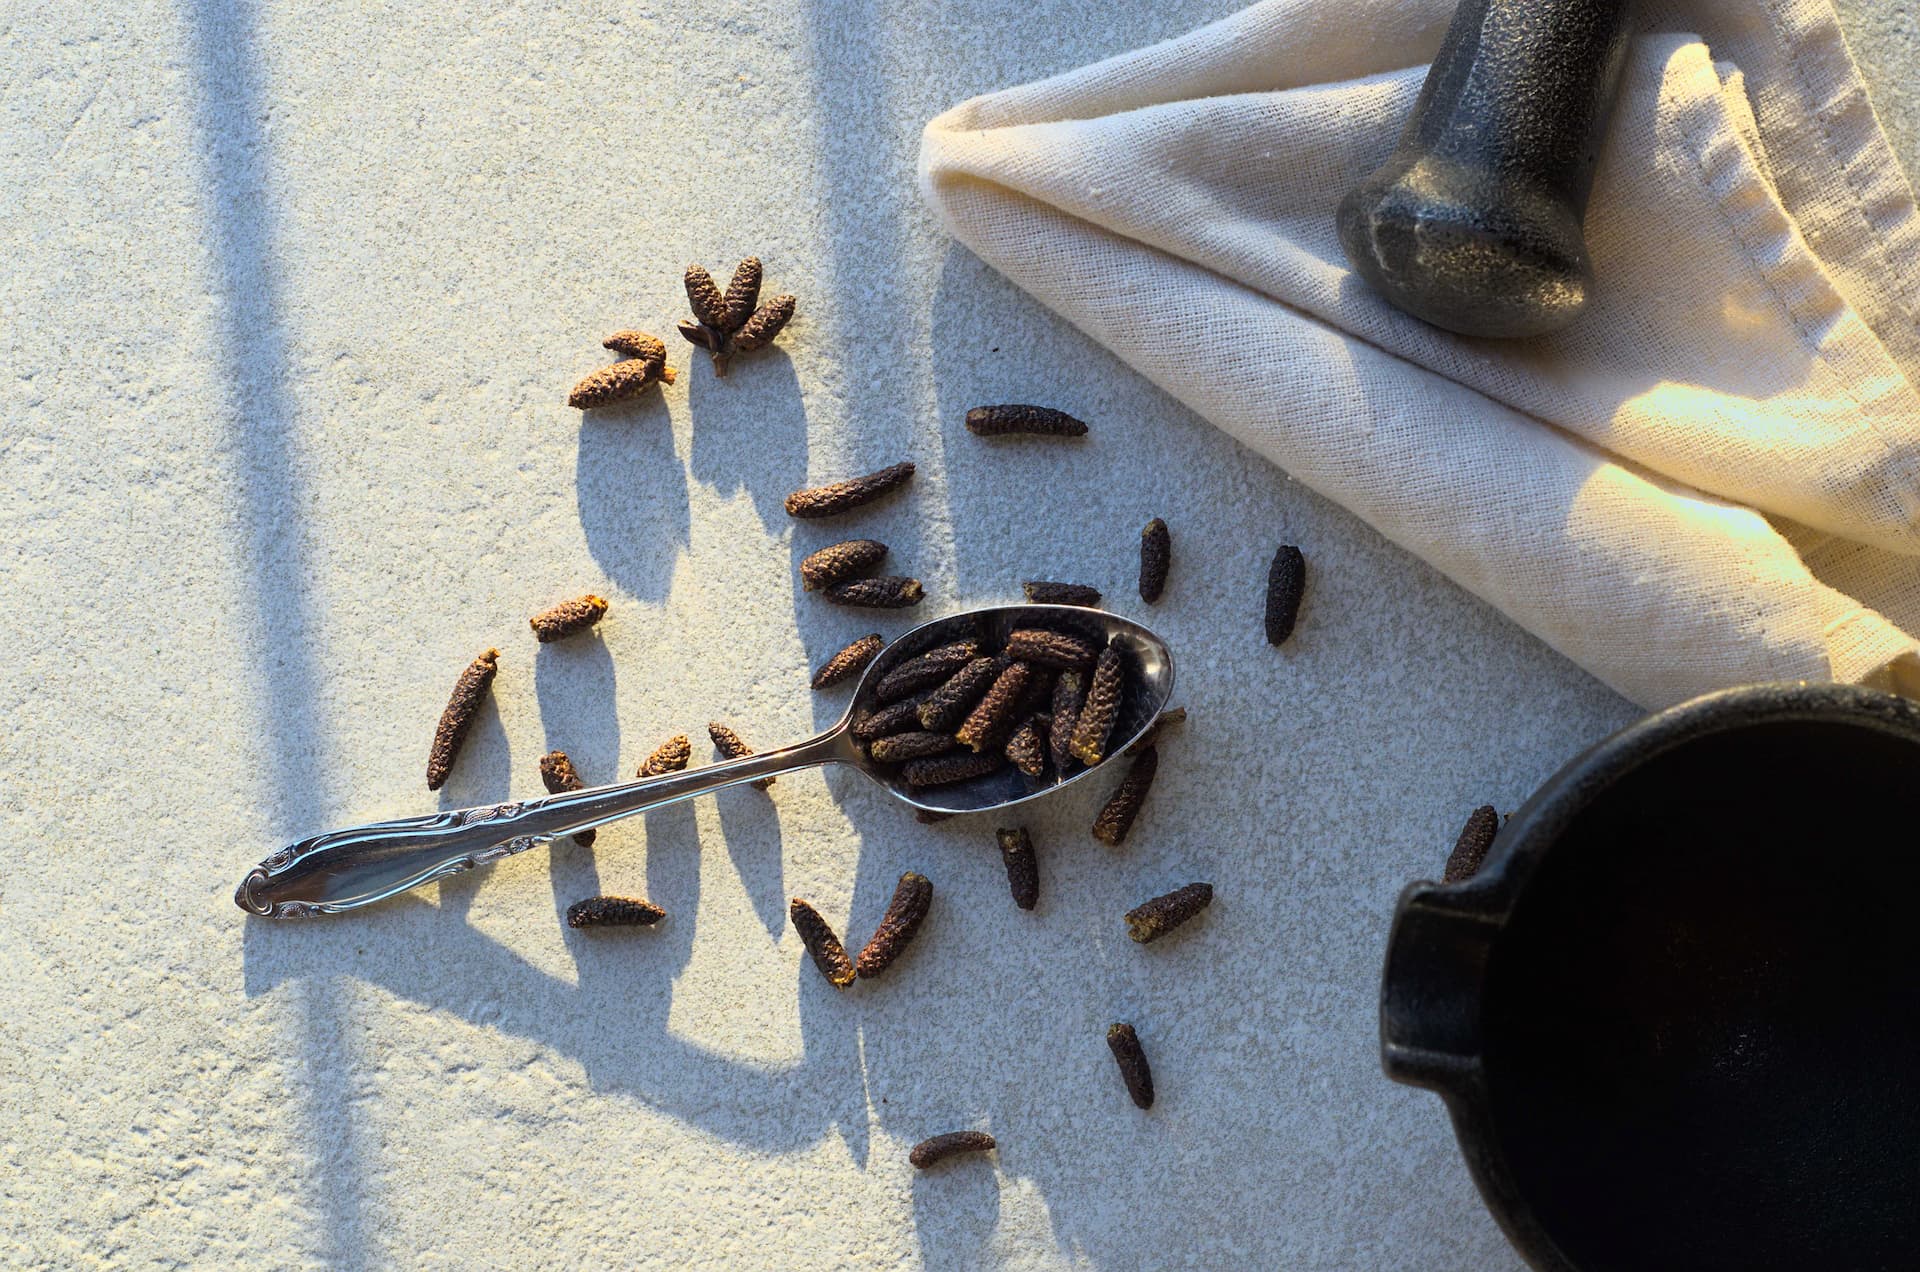 Chatons de poivre des dunes sur fond beige dans une cuiller. Aussi appelé poivre crispé ou poivre d'aulne, cette épice boréale provient de l'aulne crispé.